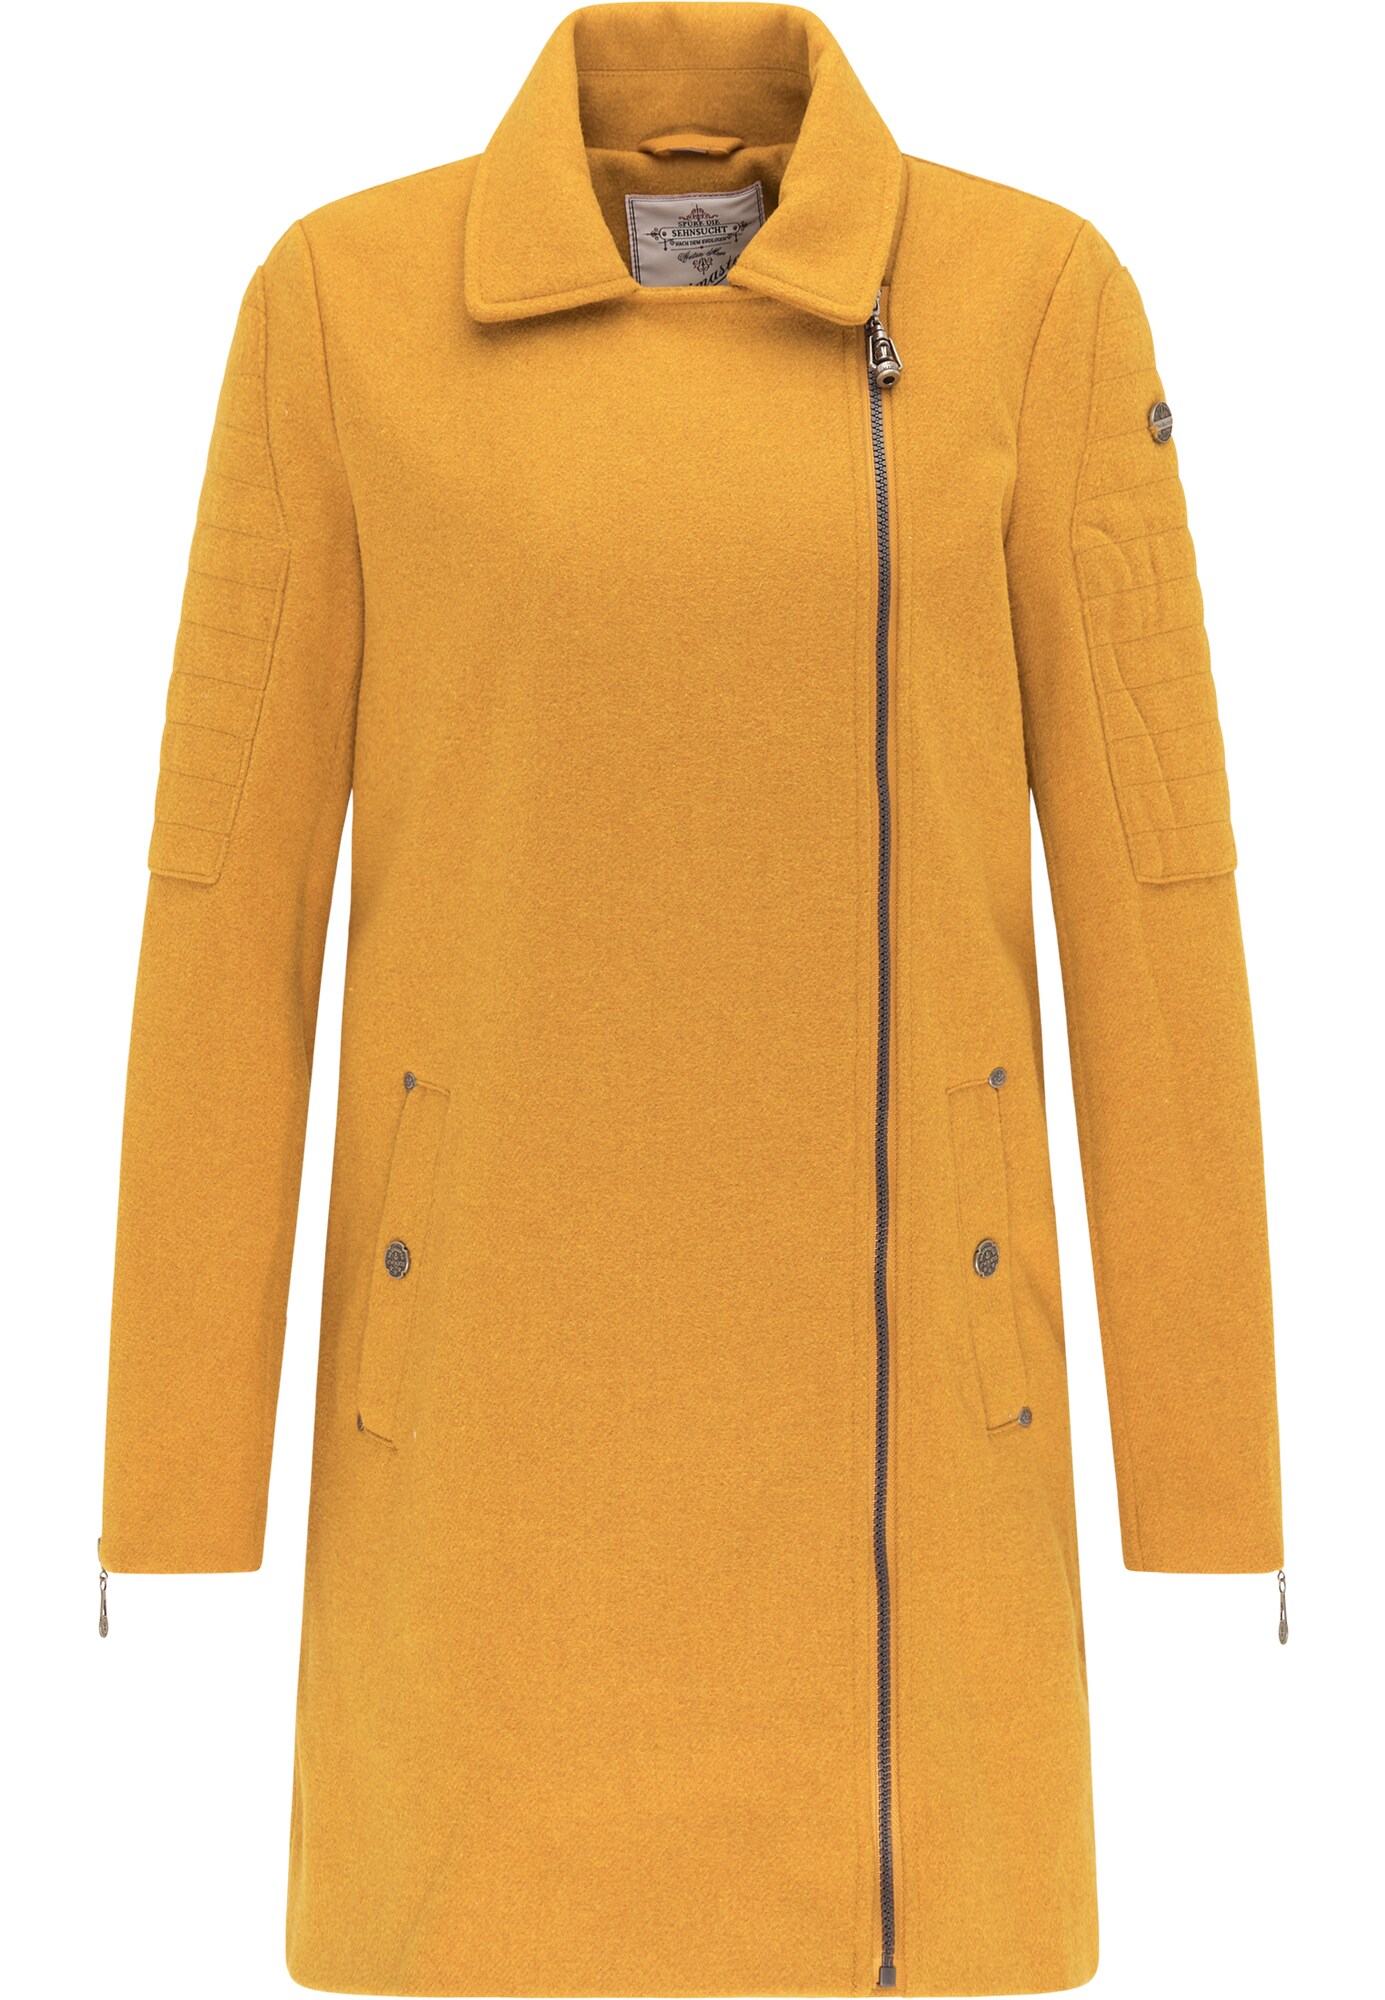 DreiMaster Vintage Rudeninis-žieminis paltas  aukso geltonumo spalva